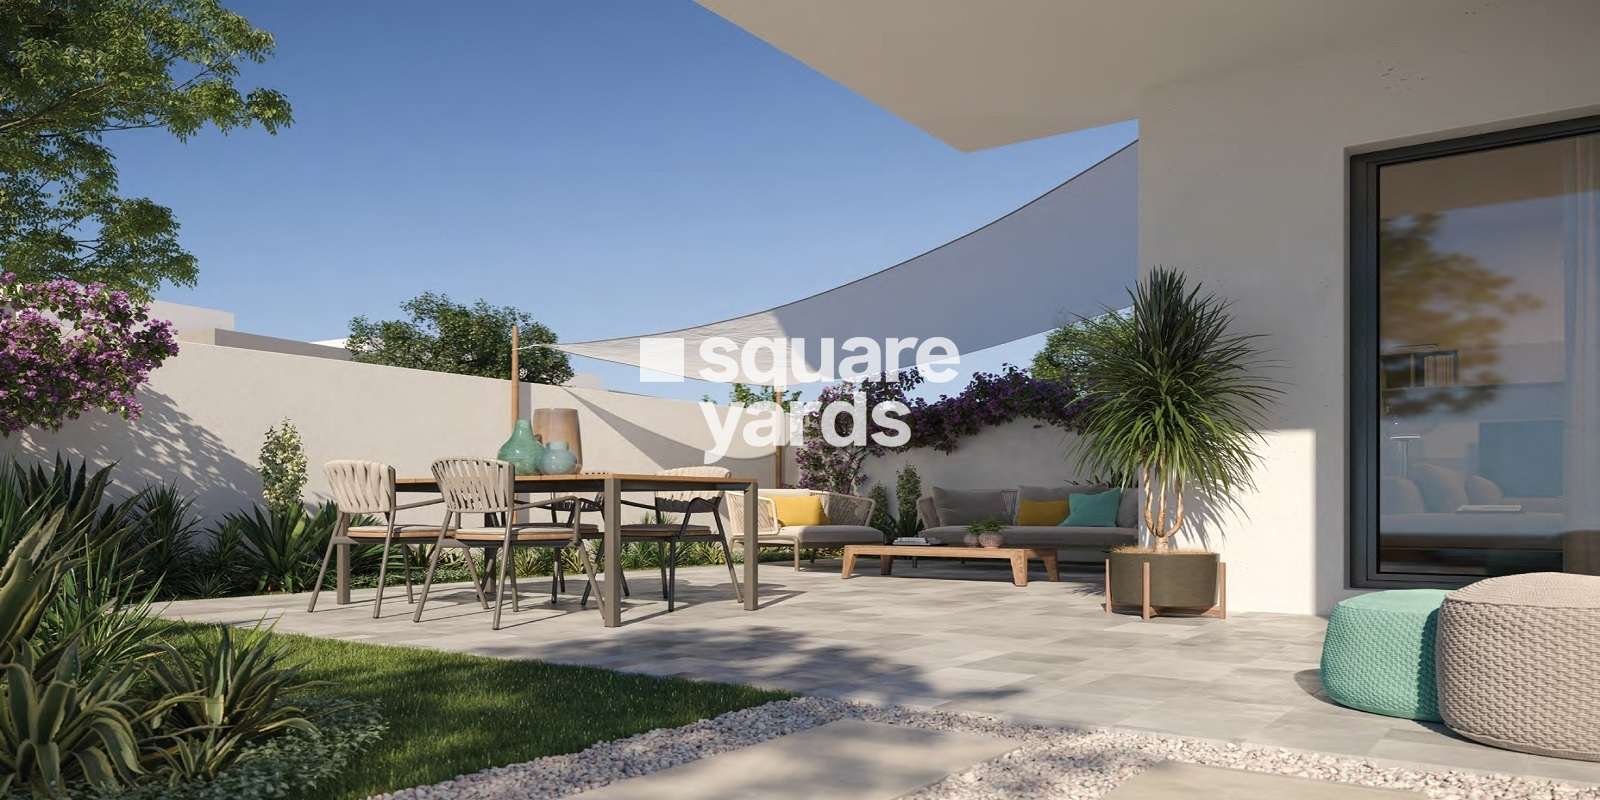 aldar noya project amenities features9